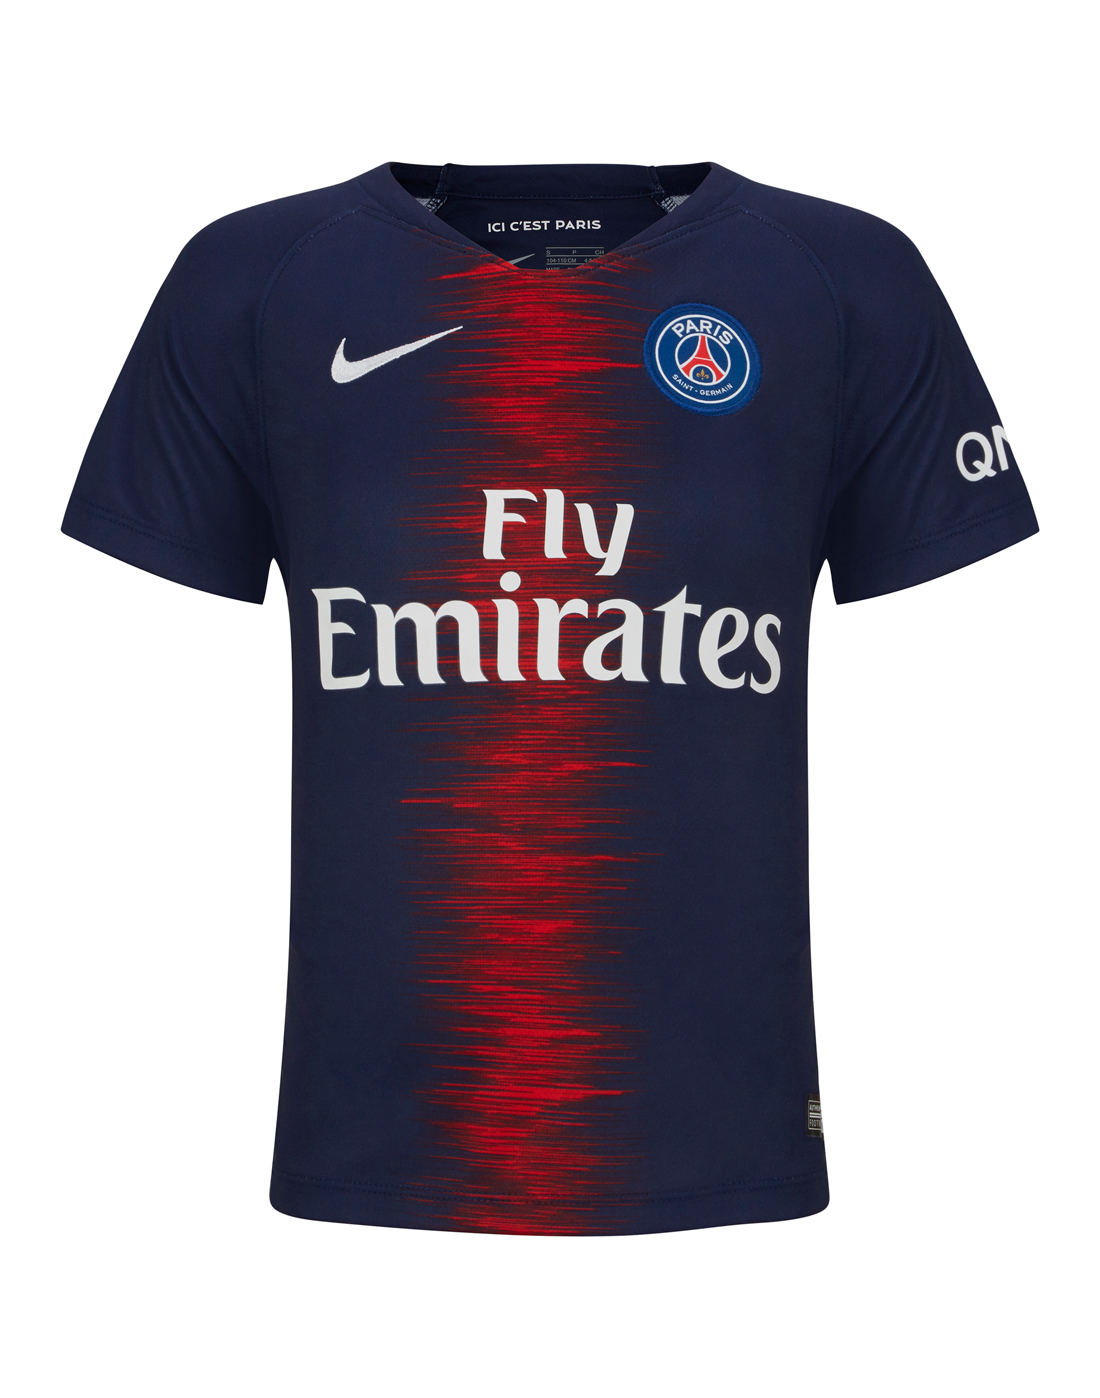 Psg Kit  PSG Kit History  Champions League Shirts  Psg will wear the